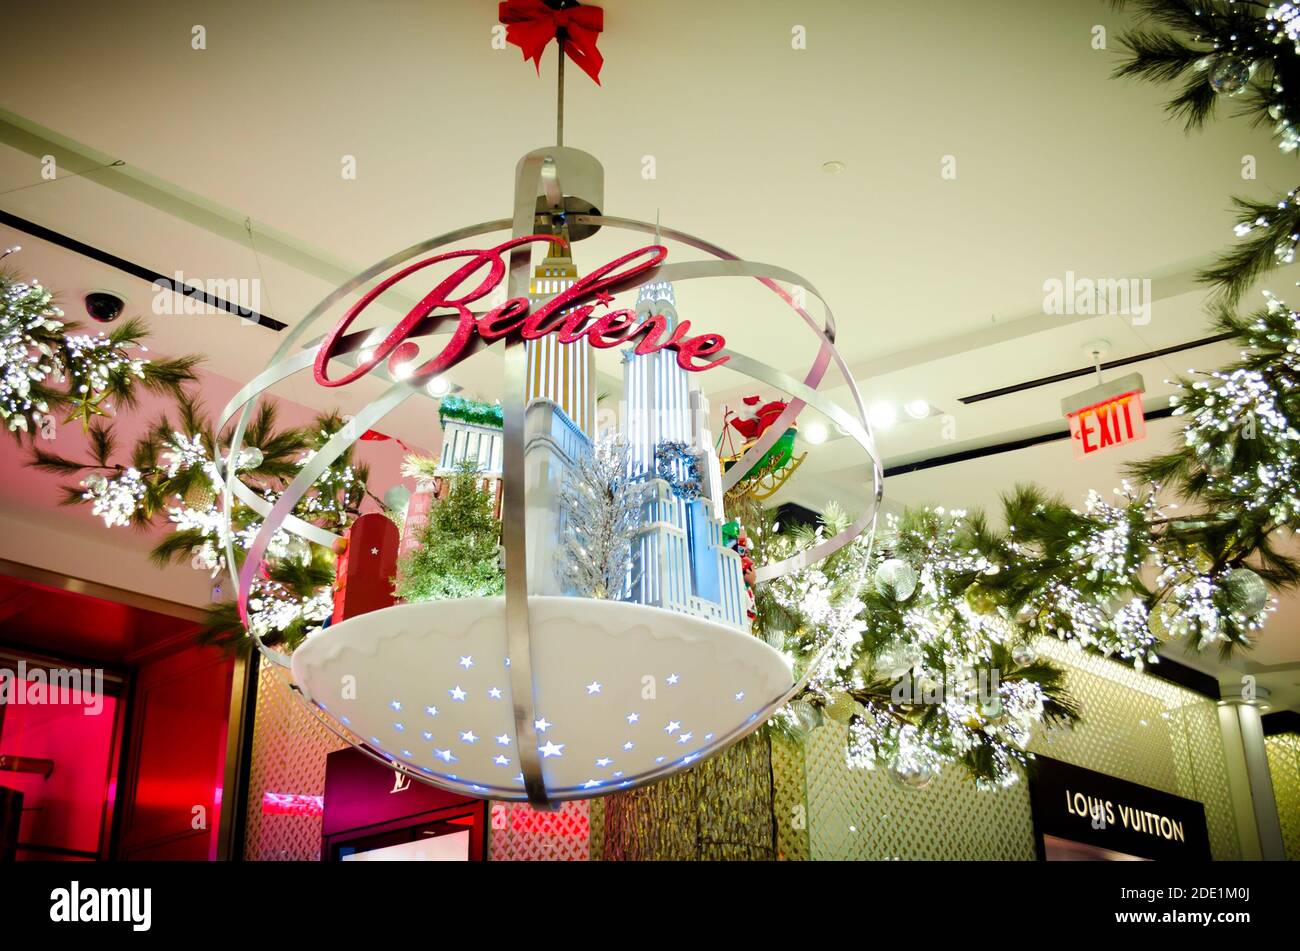 Glauben Sie Botschaft auf einem riesigen Weihnachtskugel Ornament. Feiertage Saisonale Innendekoration mit kleinformatigen Modell der historischen Gebäude von New York hängend Stockfoto